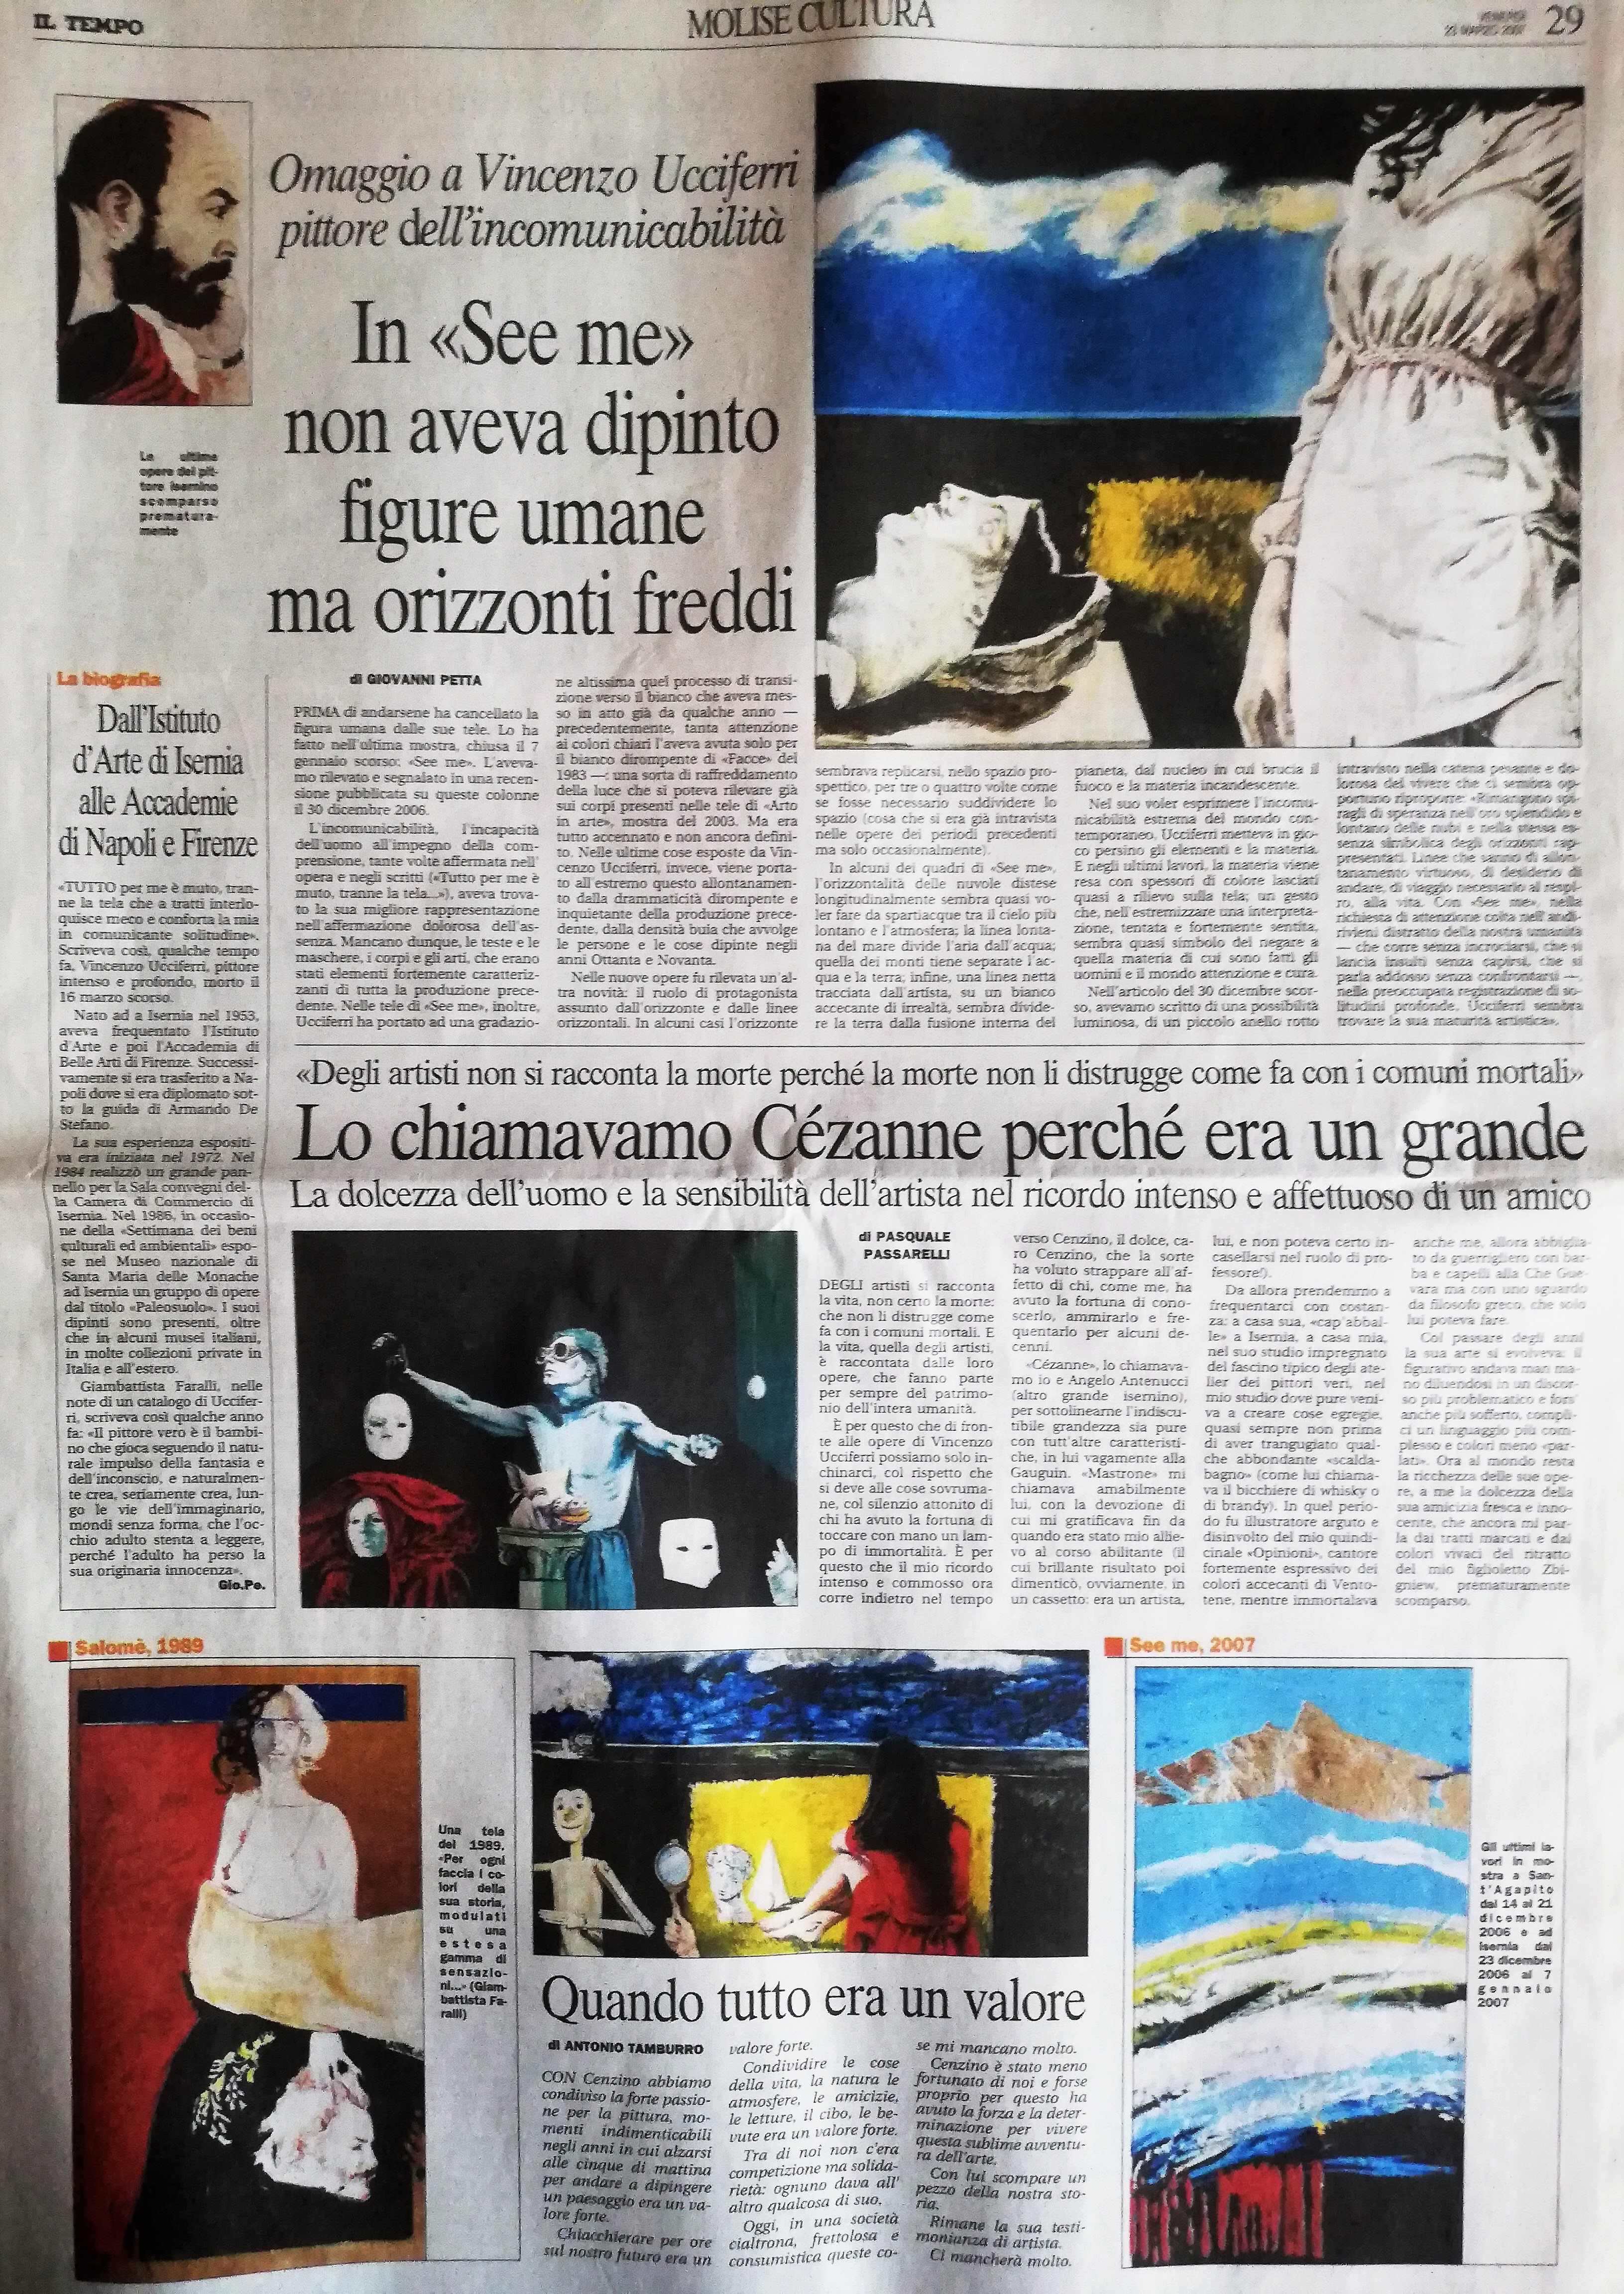 Pagina Cultura 23 marzo 2007 - Dedicata a Vincenzo Ucciferri